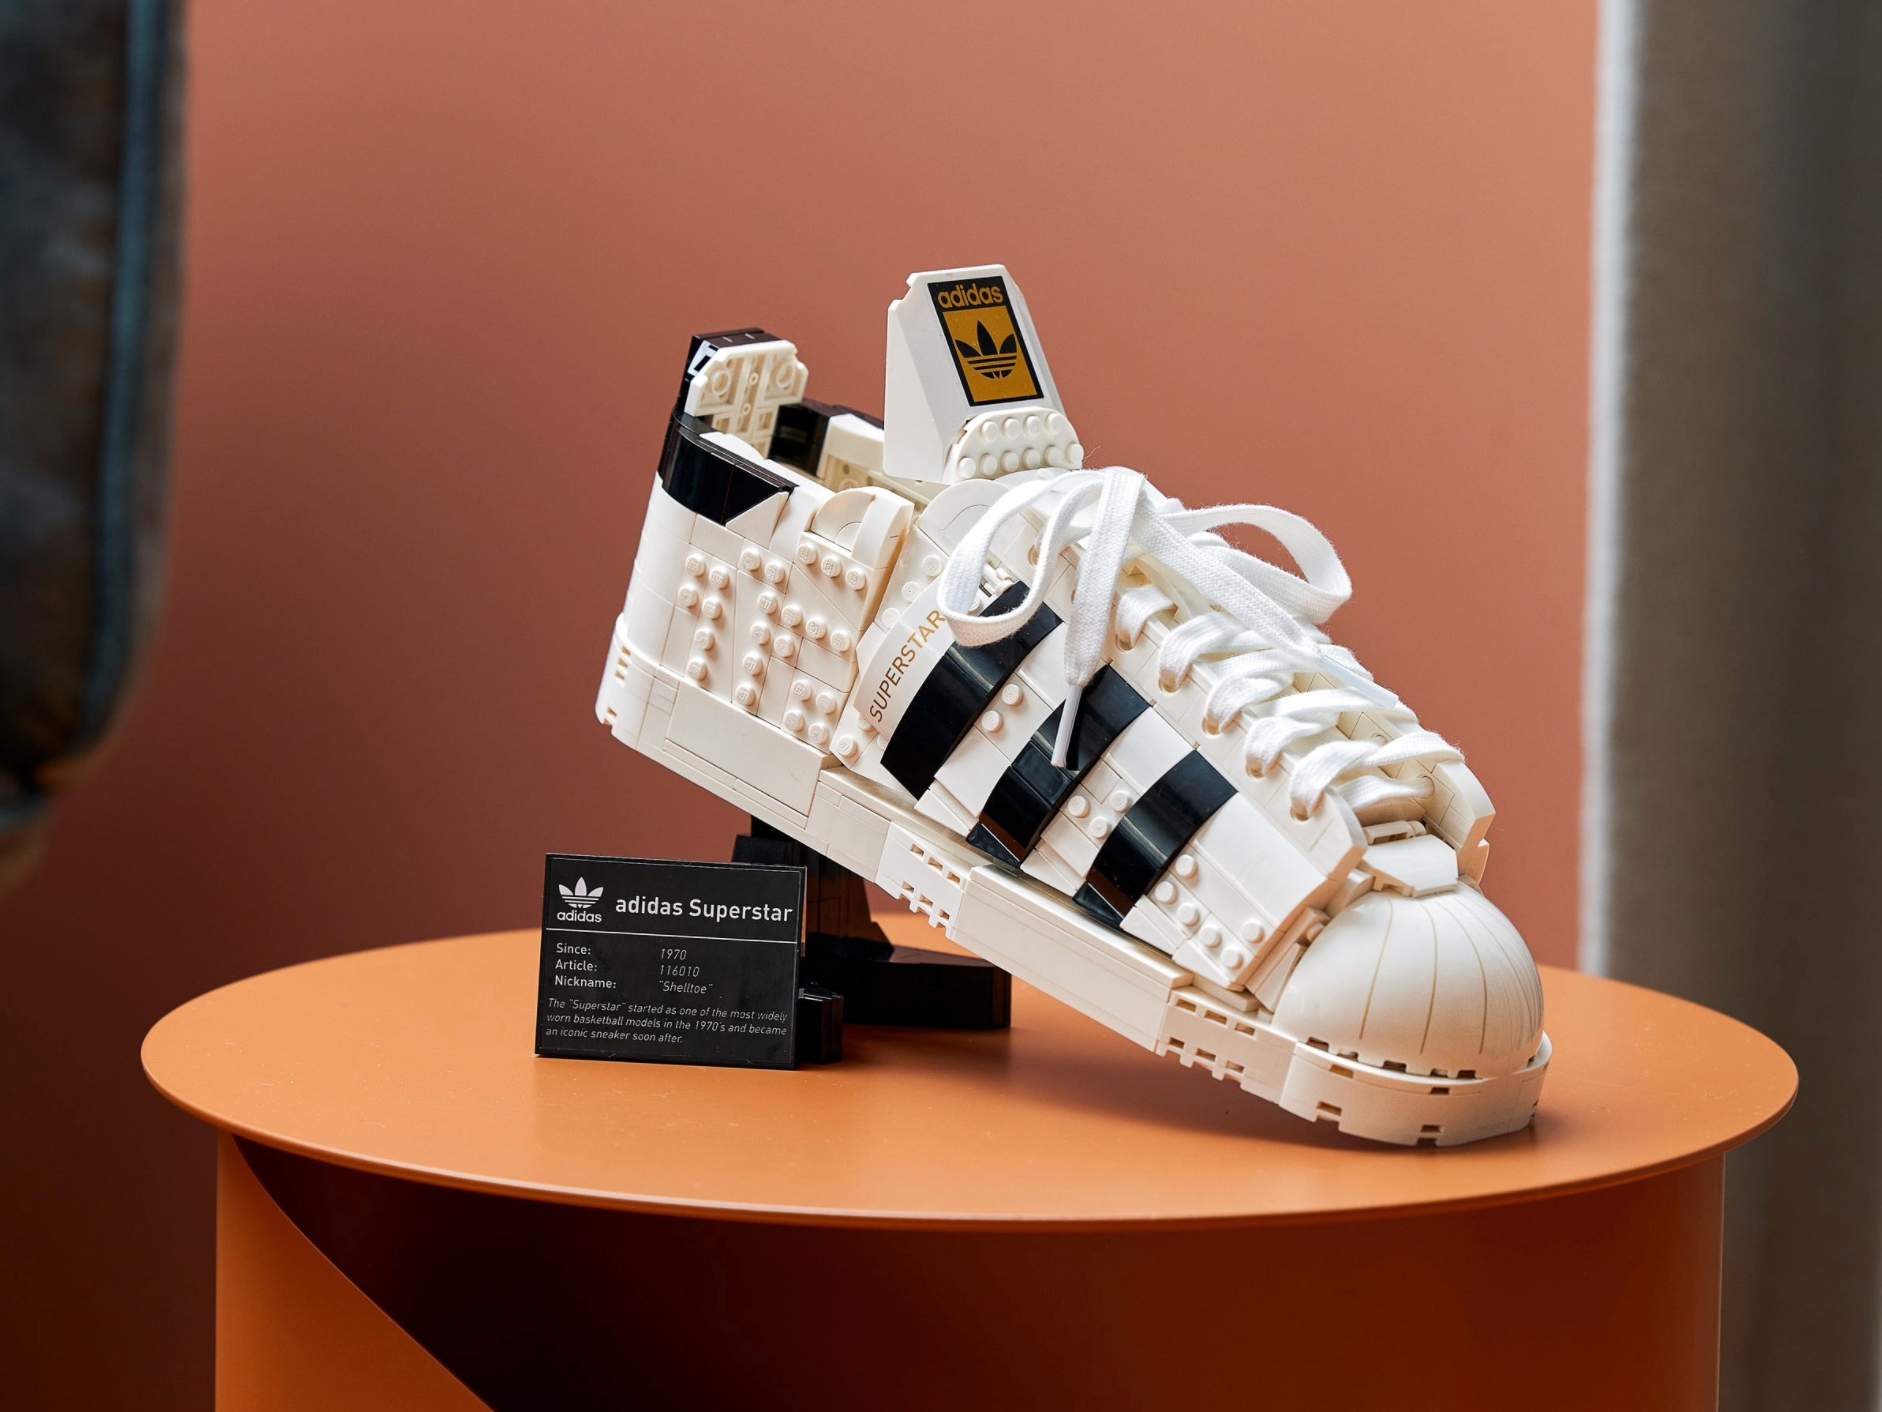 Trampki, których nie możesz nosić: LEGO zaprezentowało zestaw Adidas Superstar za 79 dolarów